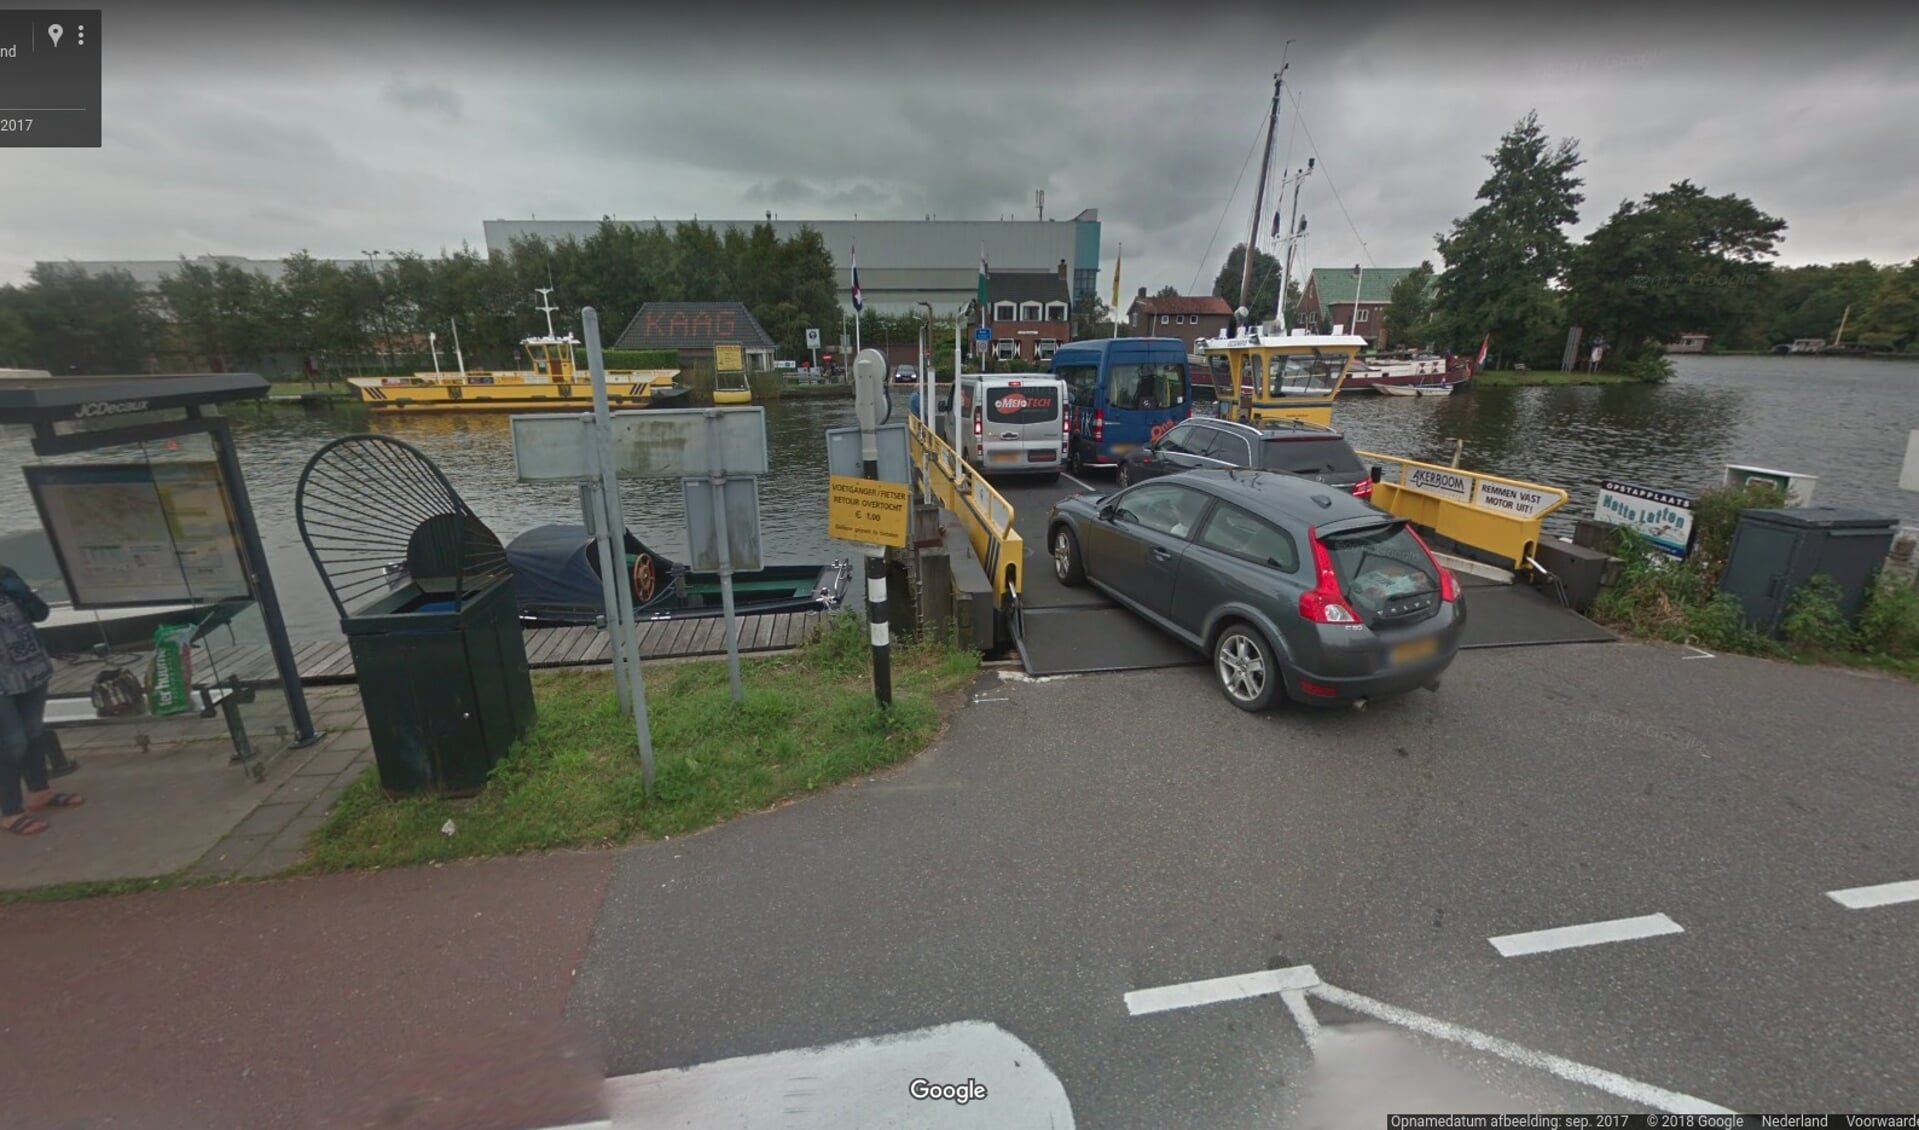 Het liefst ziet Parkeergroep Buitenkaag dat in elk geval de 75 parkeerplaatsen bij Van Lent worden gebruikt. 